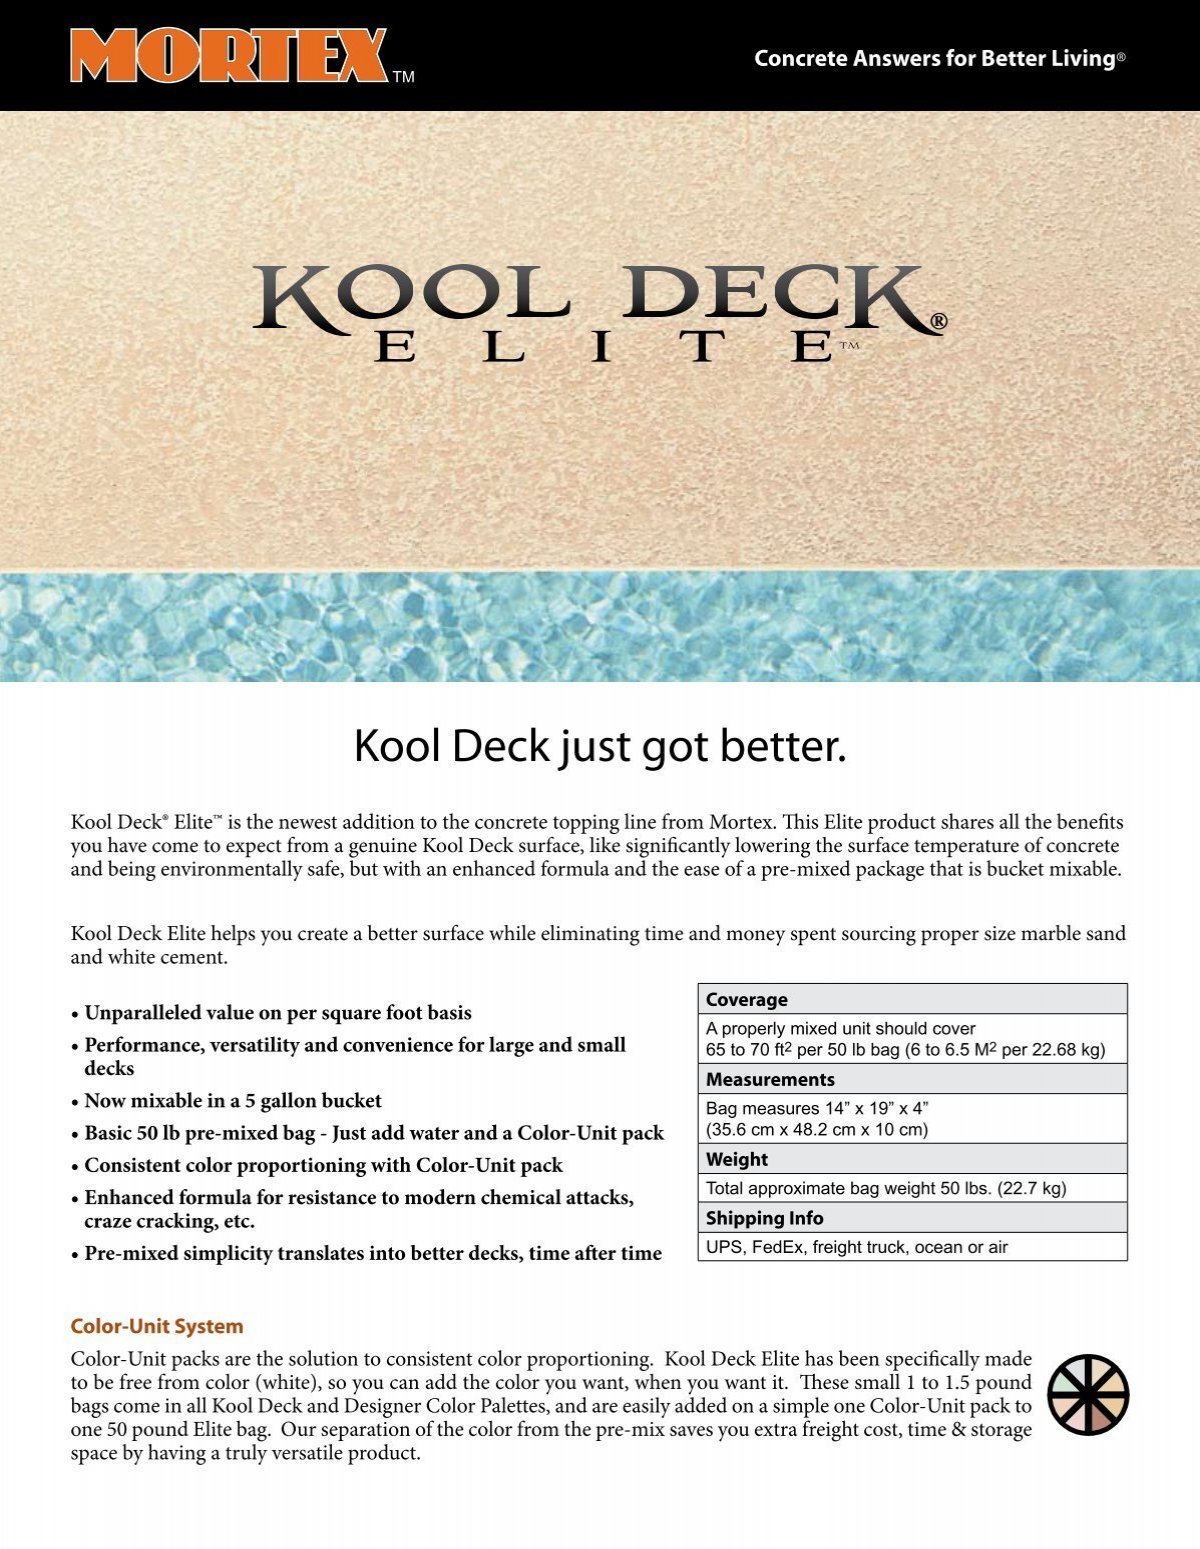 kool deck elite colors